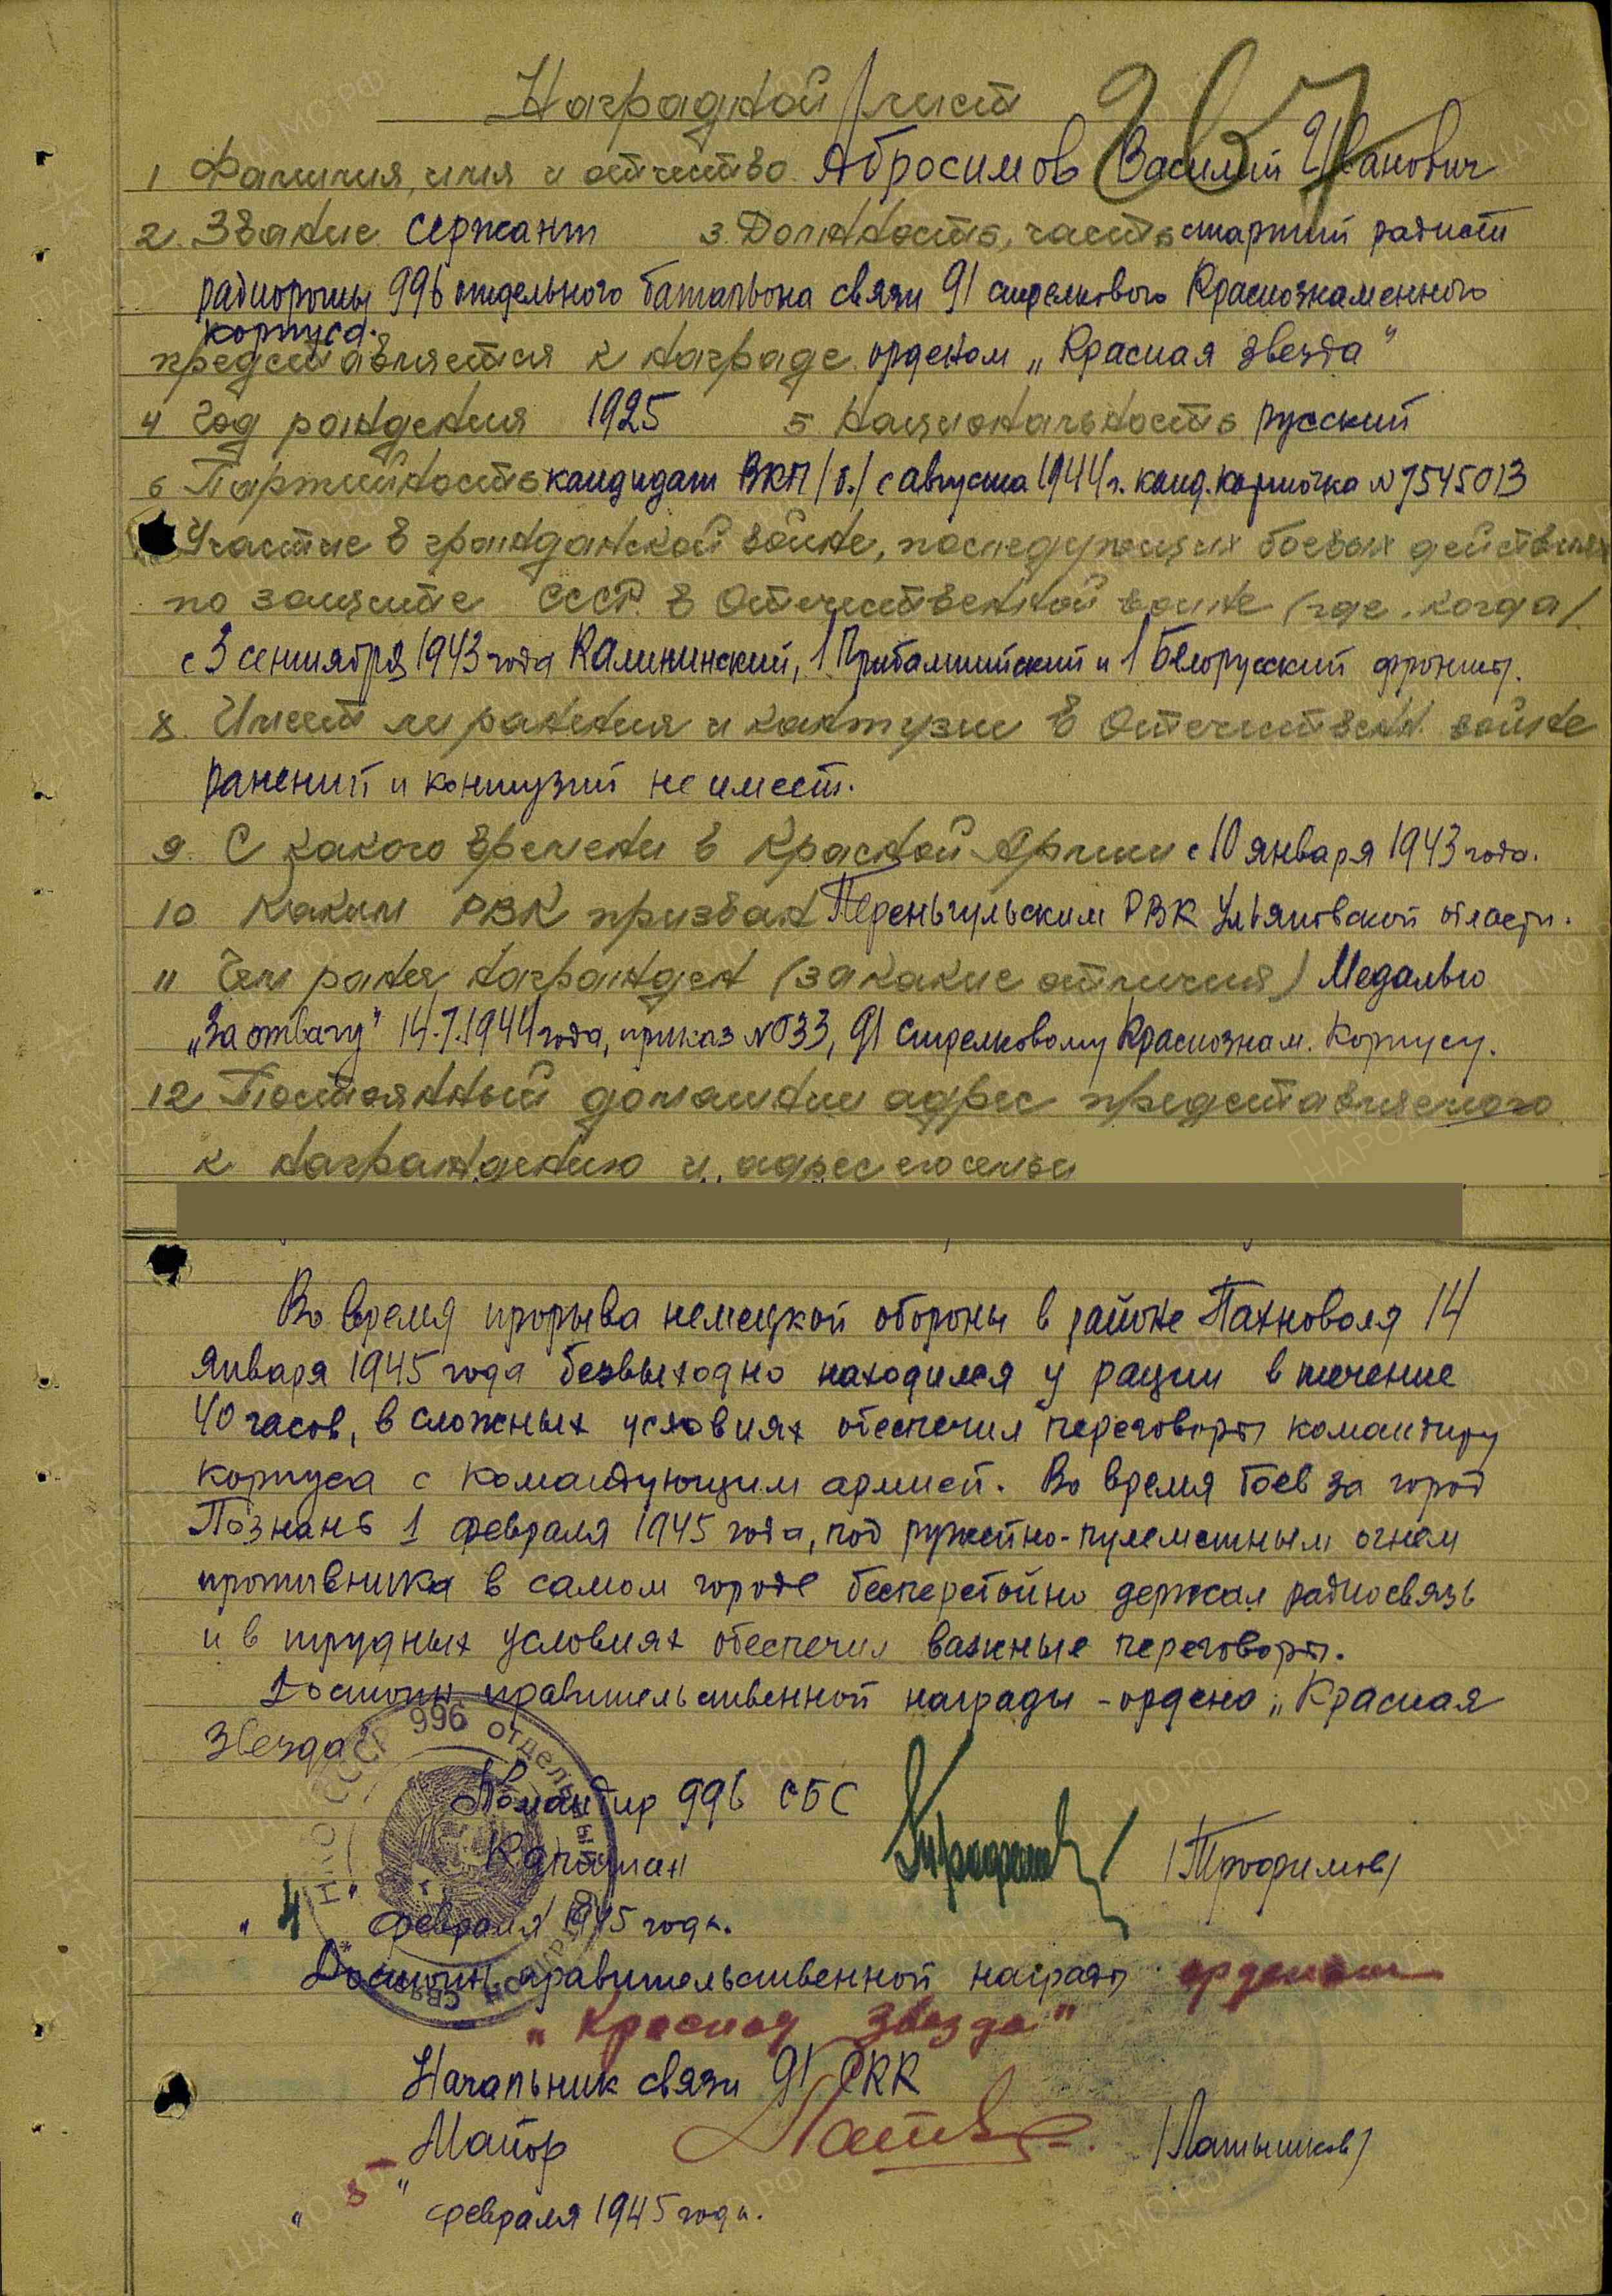 Абросимов В.И. Наградной лист от 5.02.1945 г. к ордену Красной Звезды (архивная копия)